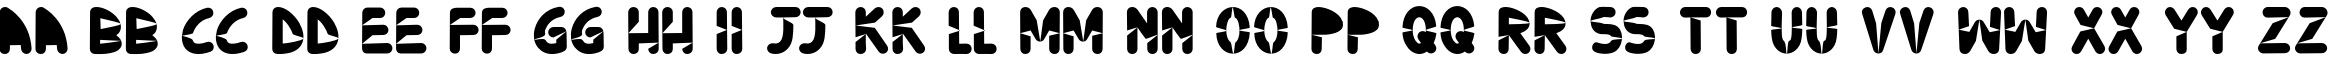 Пример написания английского алфавита шрифтом Ninjos